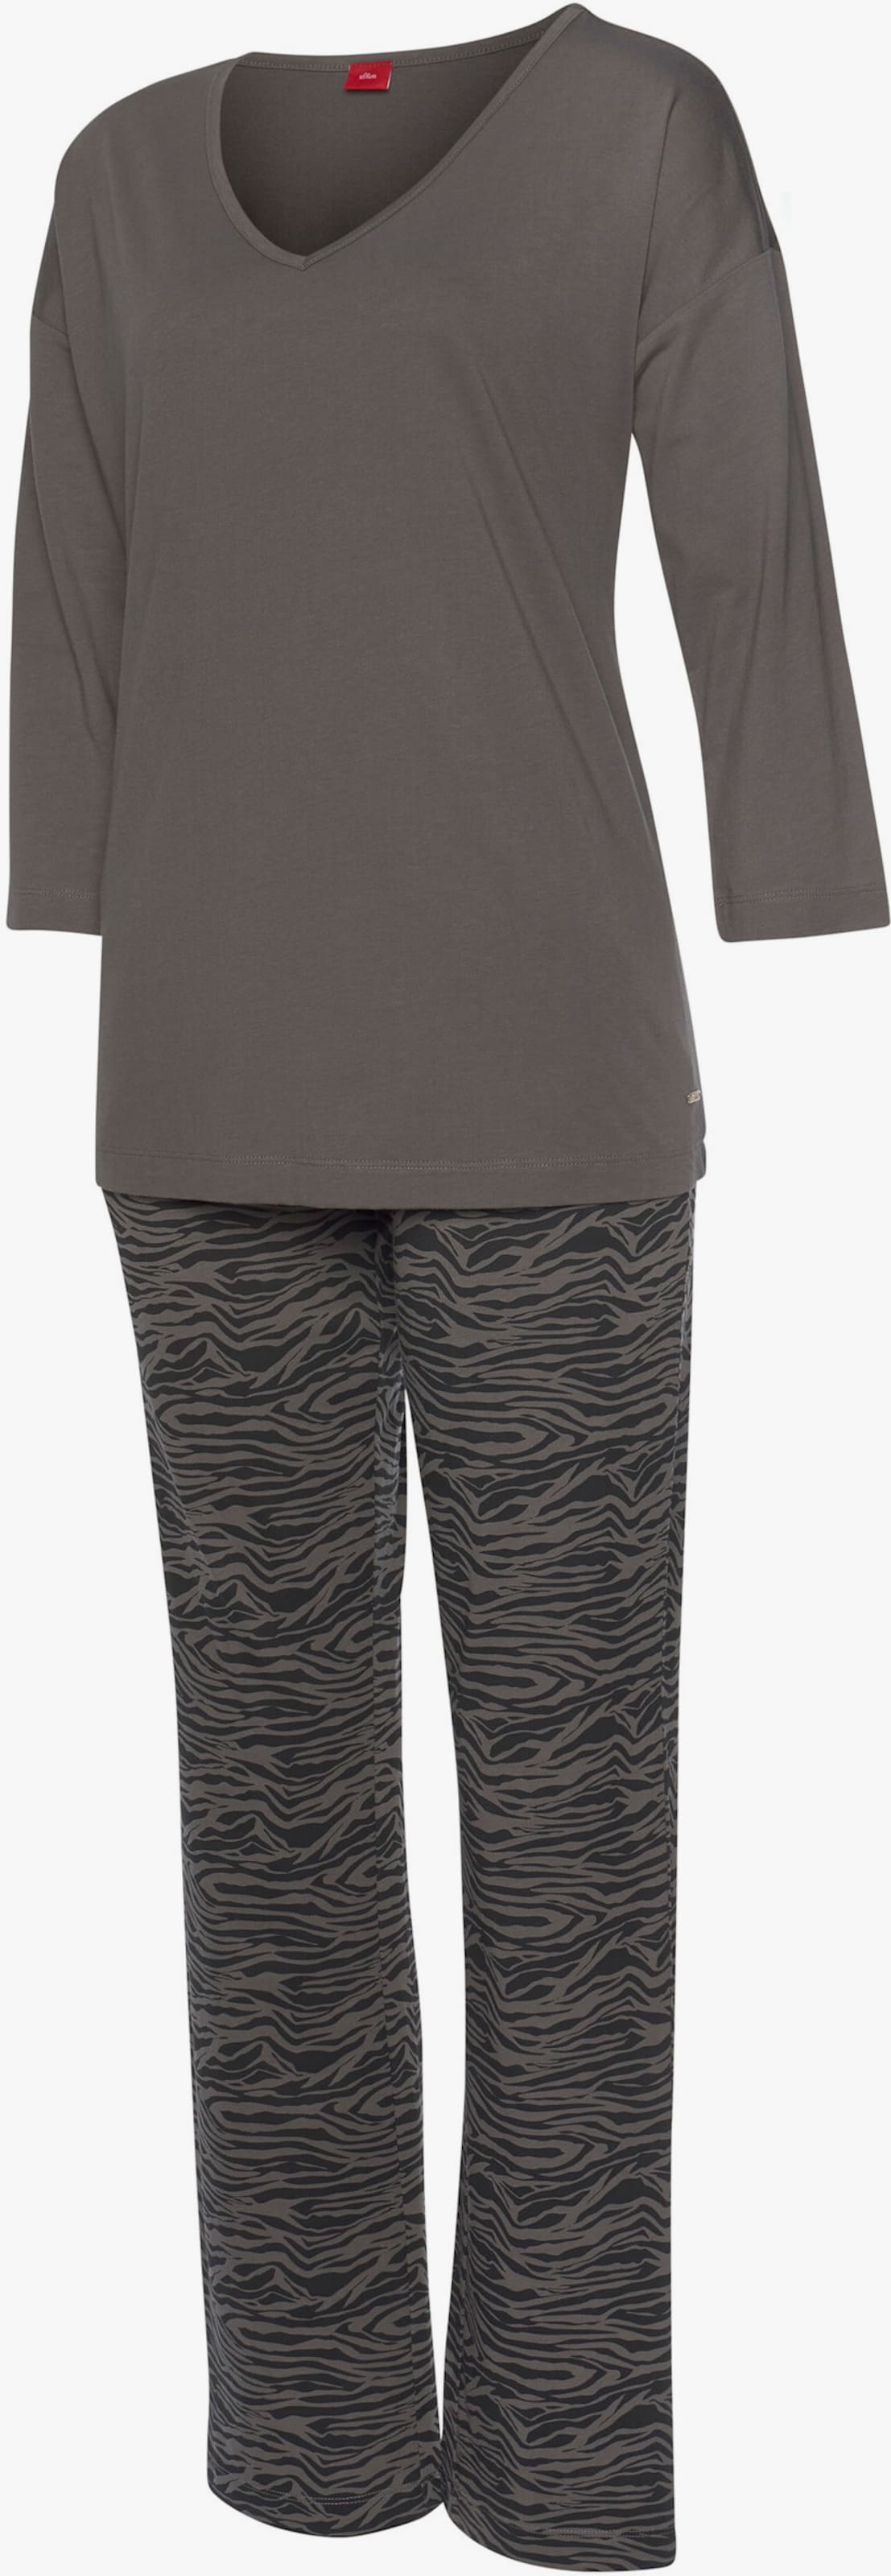 s.Oliver Pyjama - zwart gedessineerd/donkergrijs